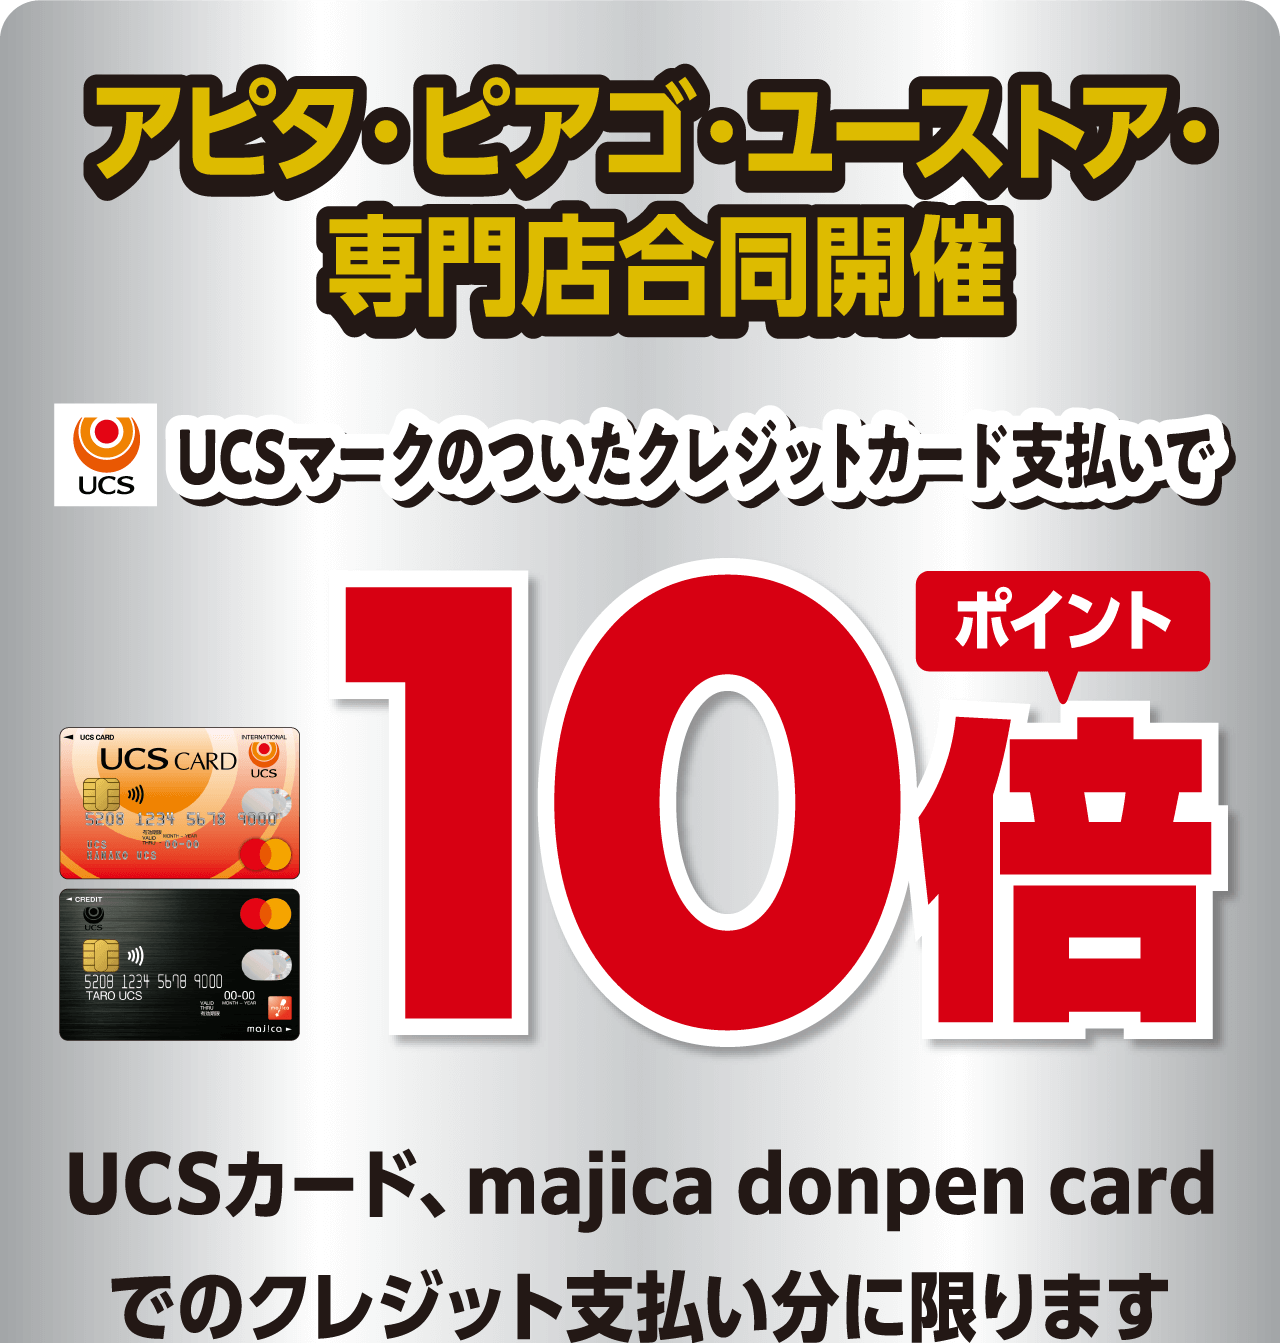 アピタ・ピアゴ・ユーストア・専門店合同開催 UCSマークのついたクレジットカード支払いでポイント10倍 UCSカード、majica donpen cardでのクレジット支払い分に限ります